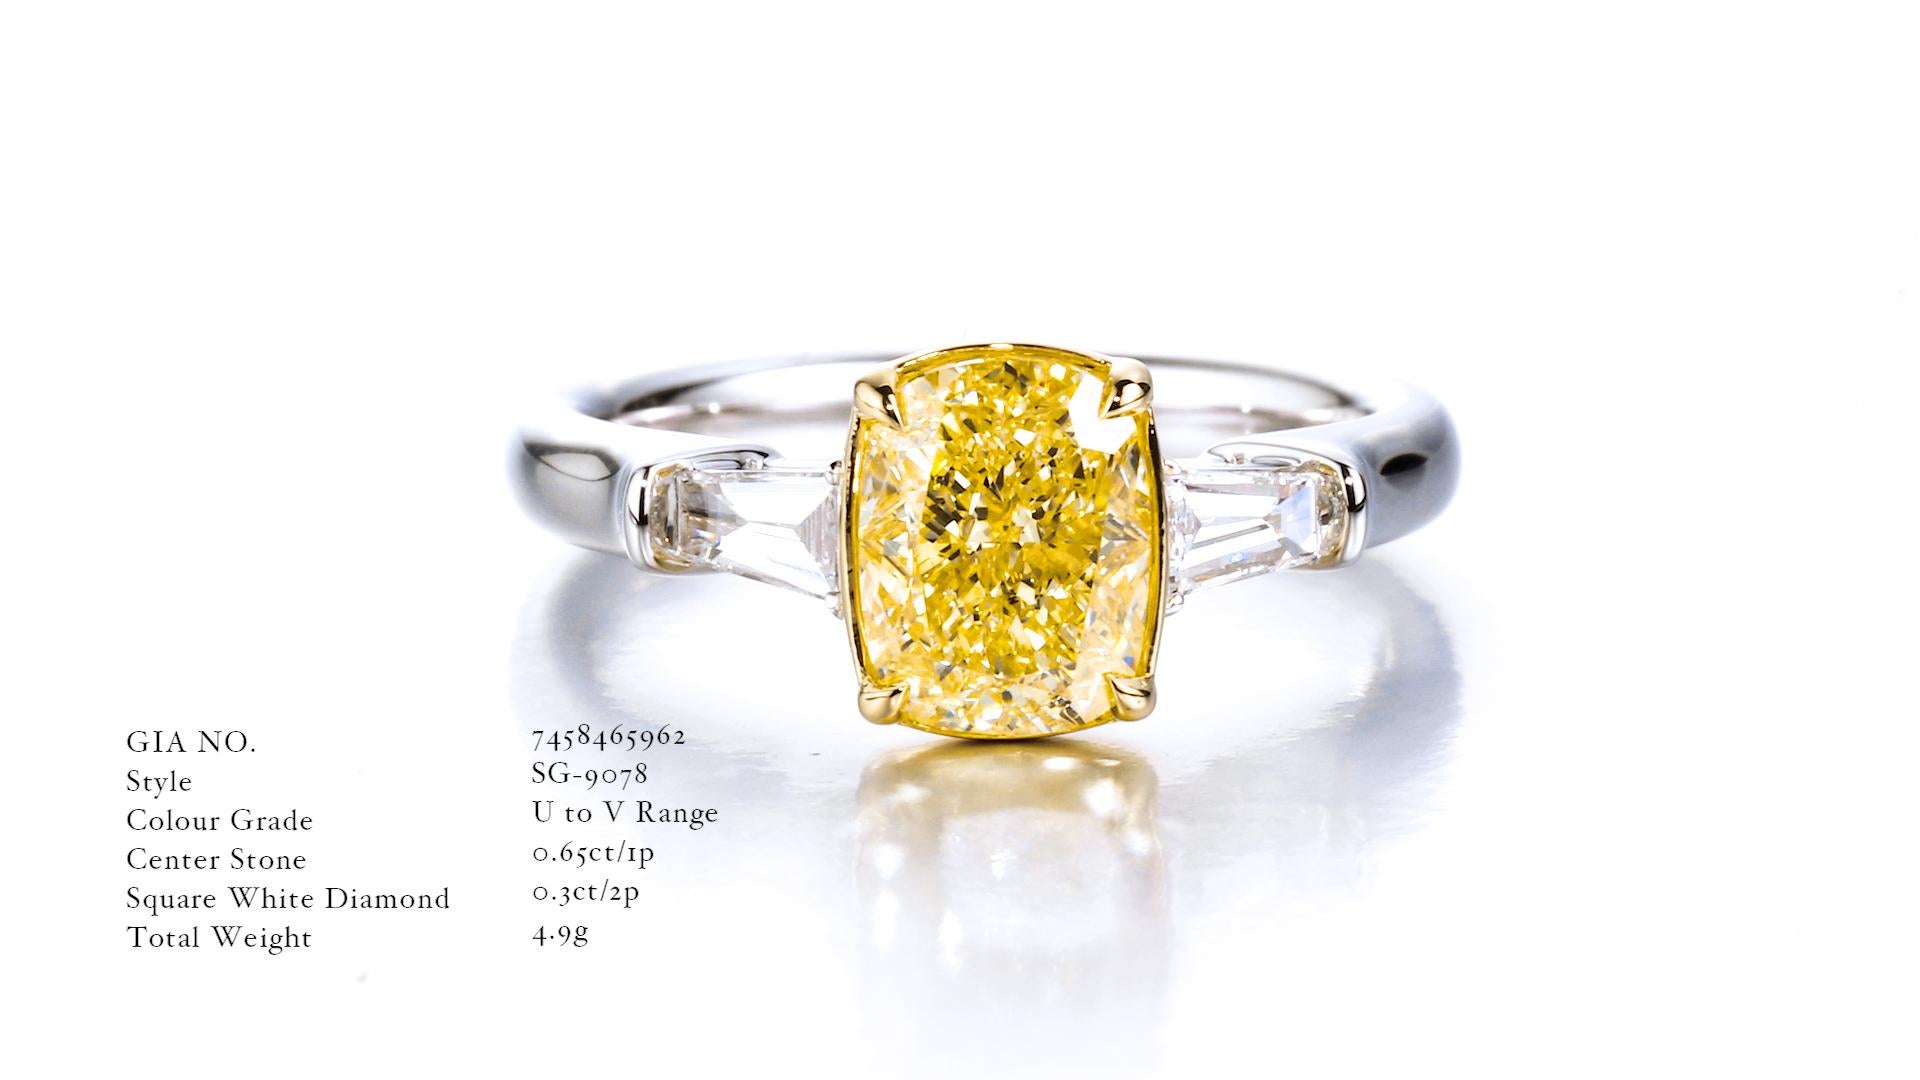 Bague solitaire à diamant en forme de coussin de 2,02ct, certifiée par le GIA, de catégorie U à V, naturelle. Neuf - En vente à Hong Kong, HK